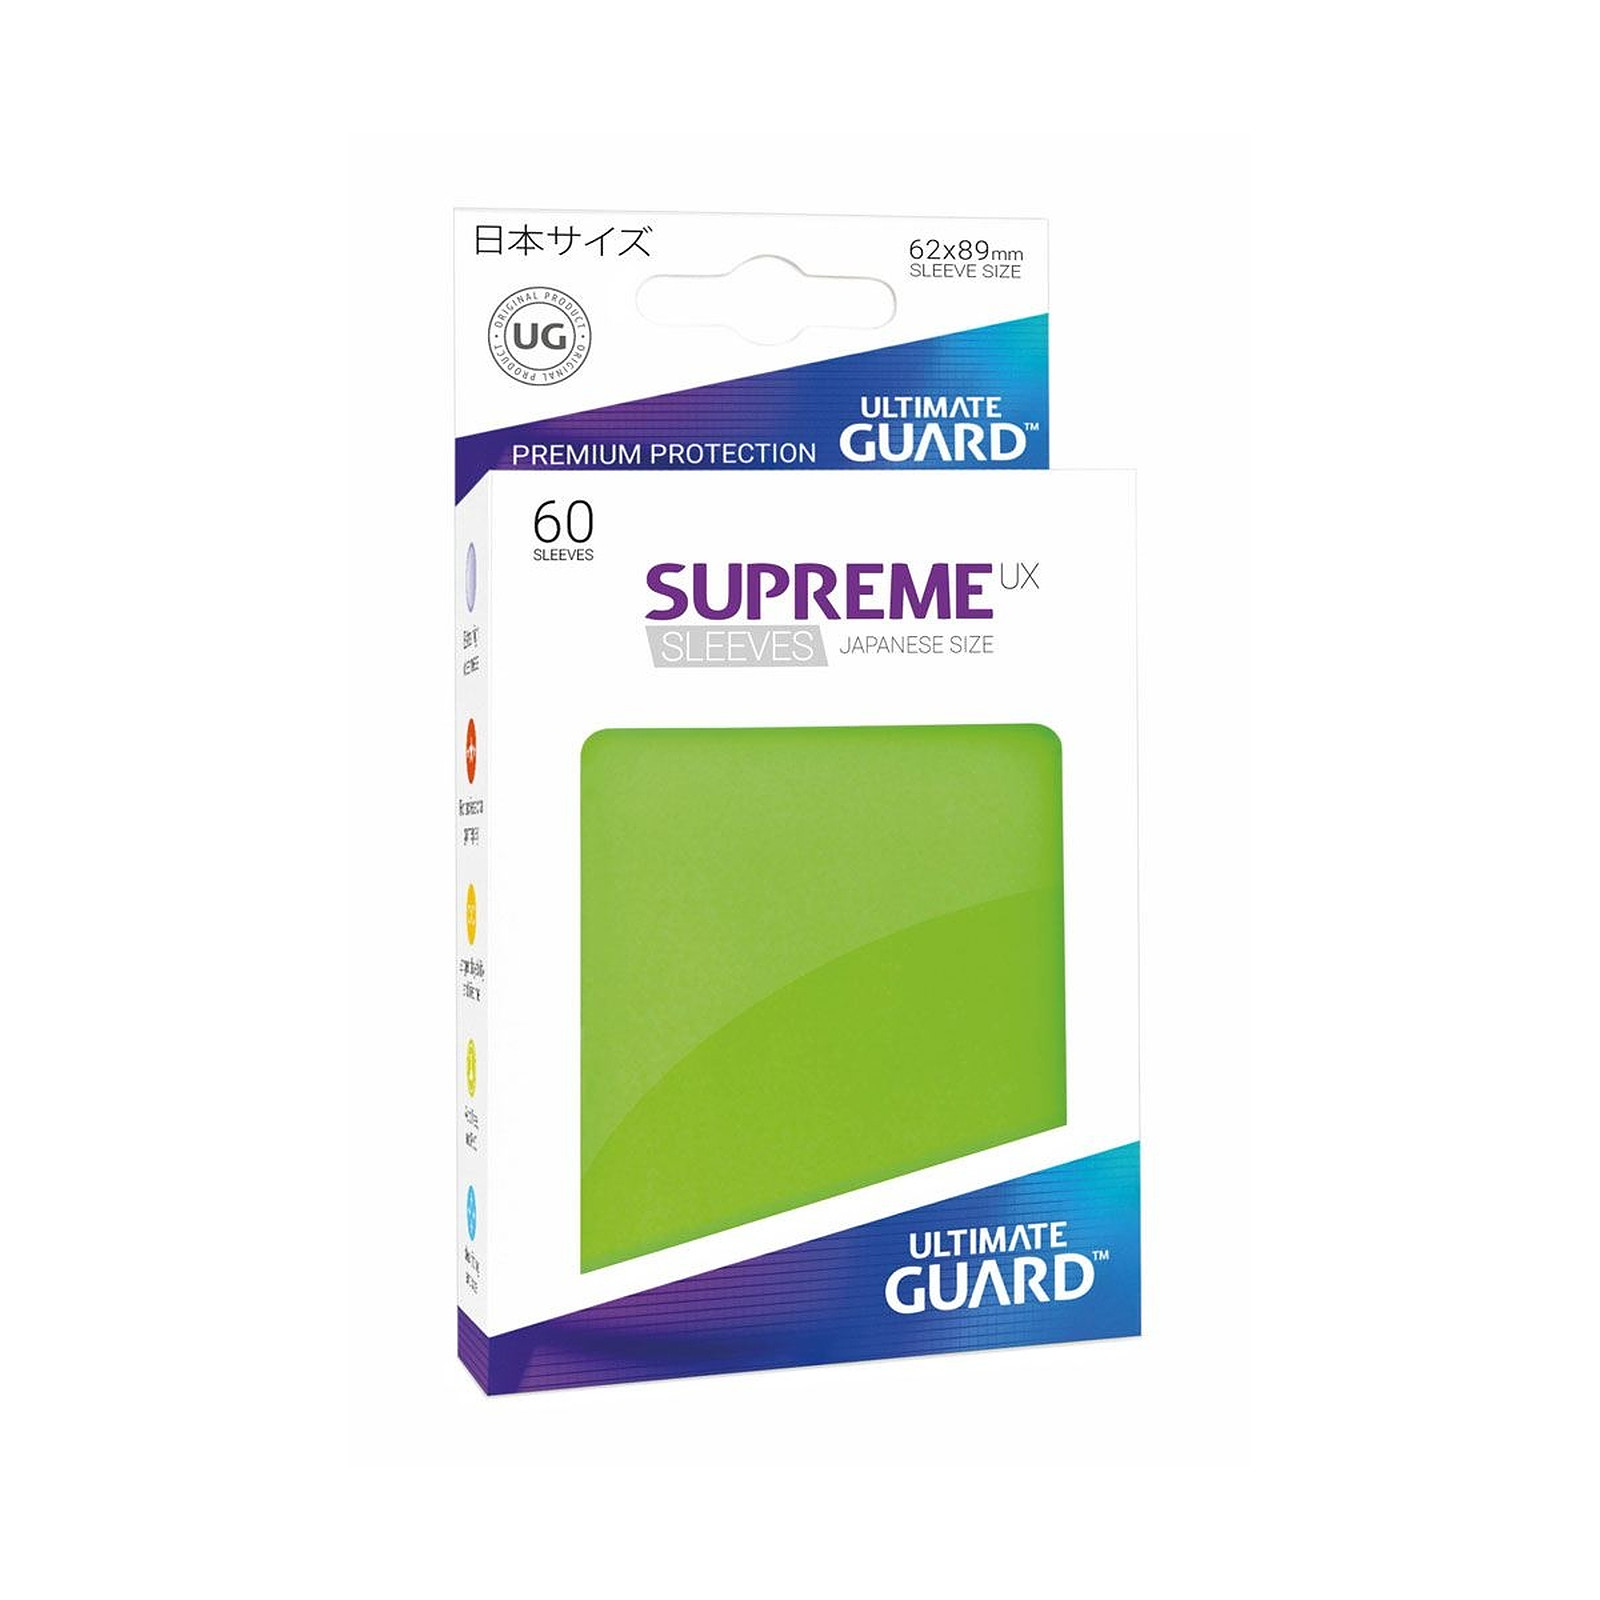 Ultimate Guard - 60 pochettes Supreme UX Sleeves format japonais Vert Clair - Accessoire jeux Ultimate Guard